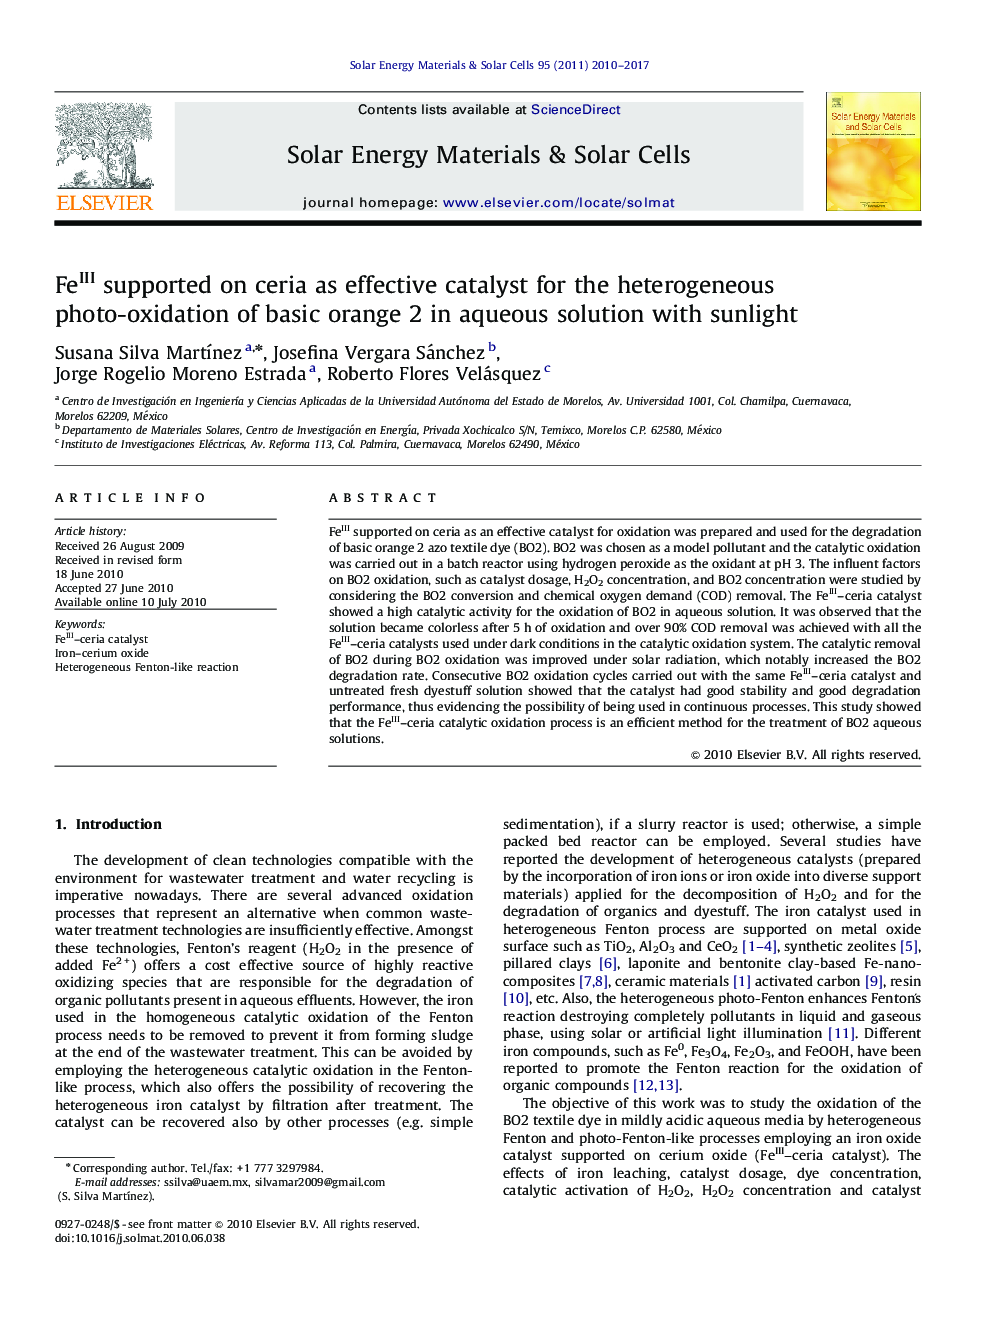 حمایت  FeIII در سریا به عنوان کاتالیزور موثر برای ناهمگن عکس اکسیداسیون از رنگ نارنجی پایه 2 در محلول آبی با نور خورشید 